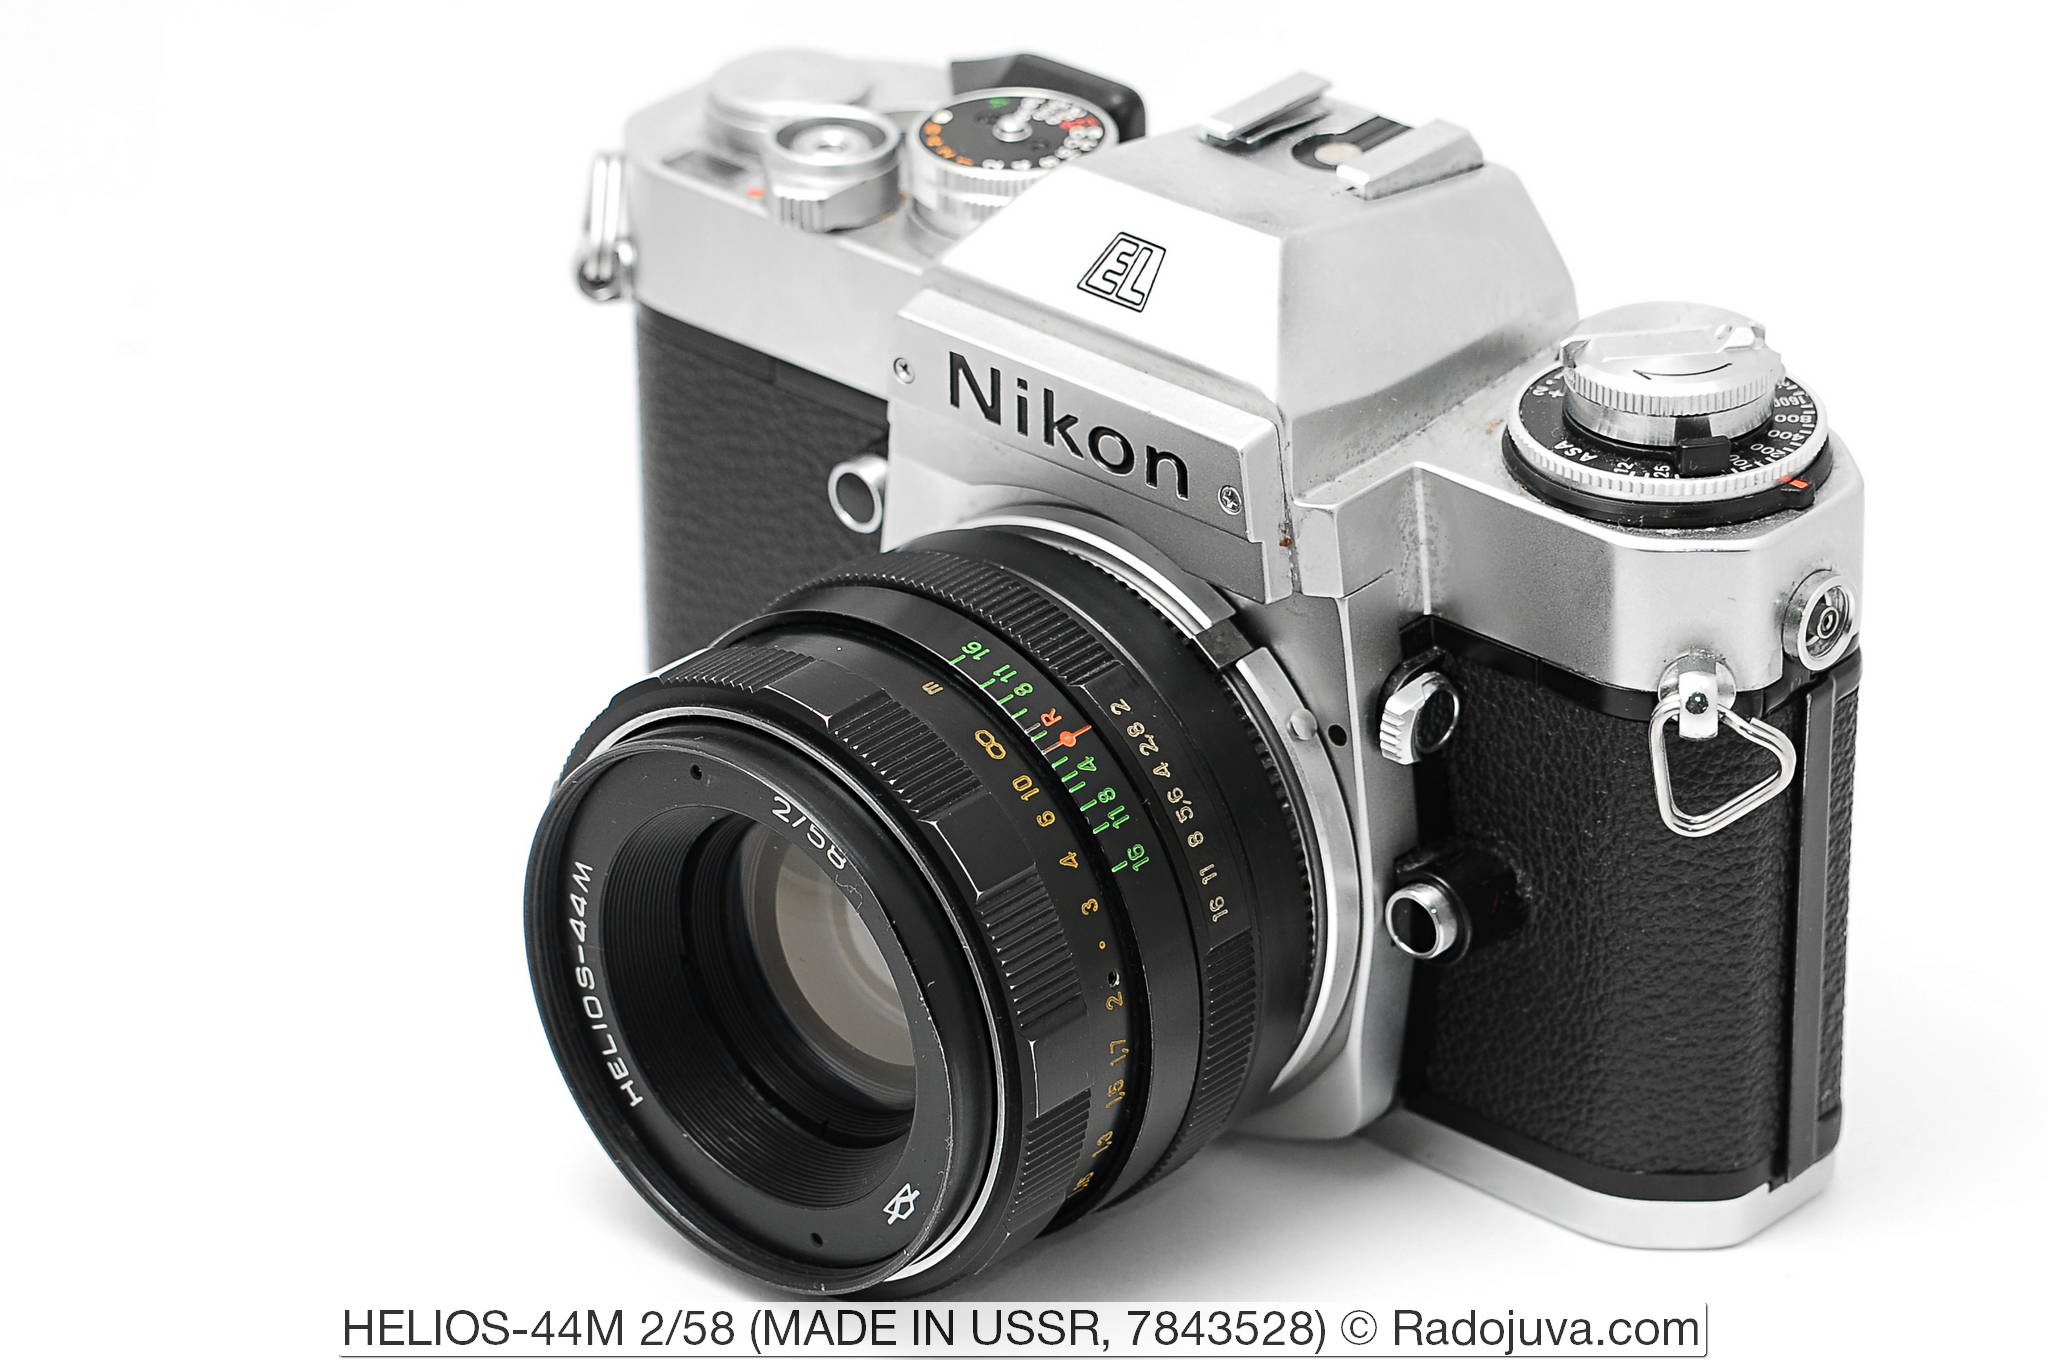 Обзор объектива HELIOS-44M 2/58 (КМЗ). Объектив показан на пленочной зеркальной камере Nikon EL2. Увеличить изображение. Установка объектива на фотоаппарат осуществлена с помощью переходника M42-Nikon F без чипа и линзы.